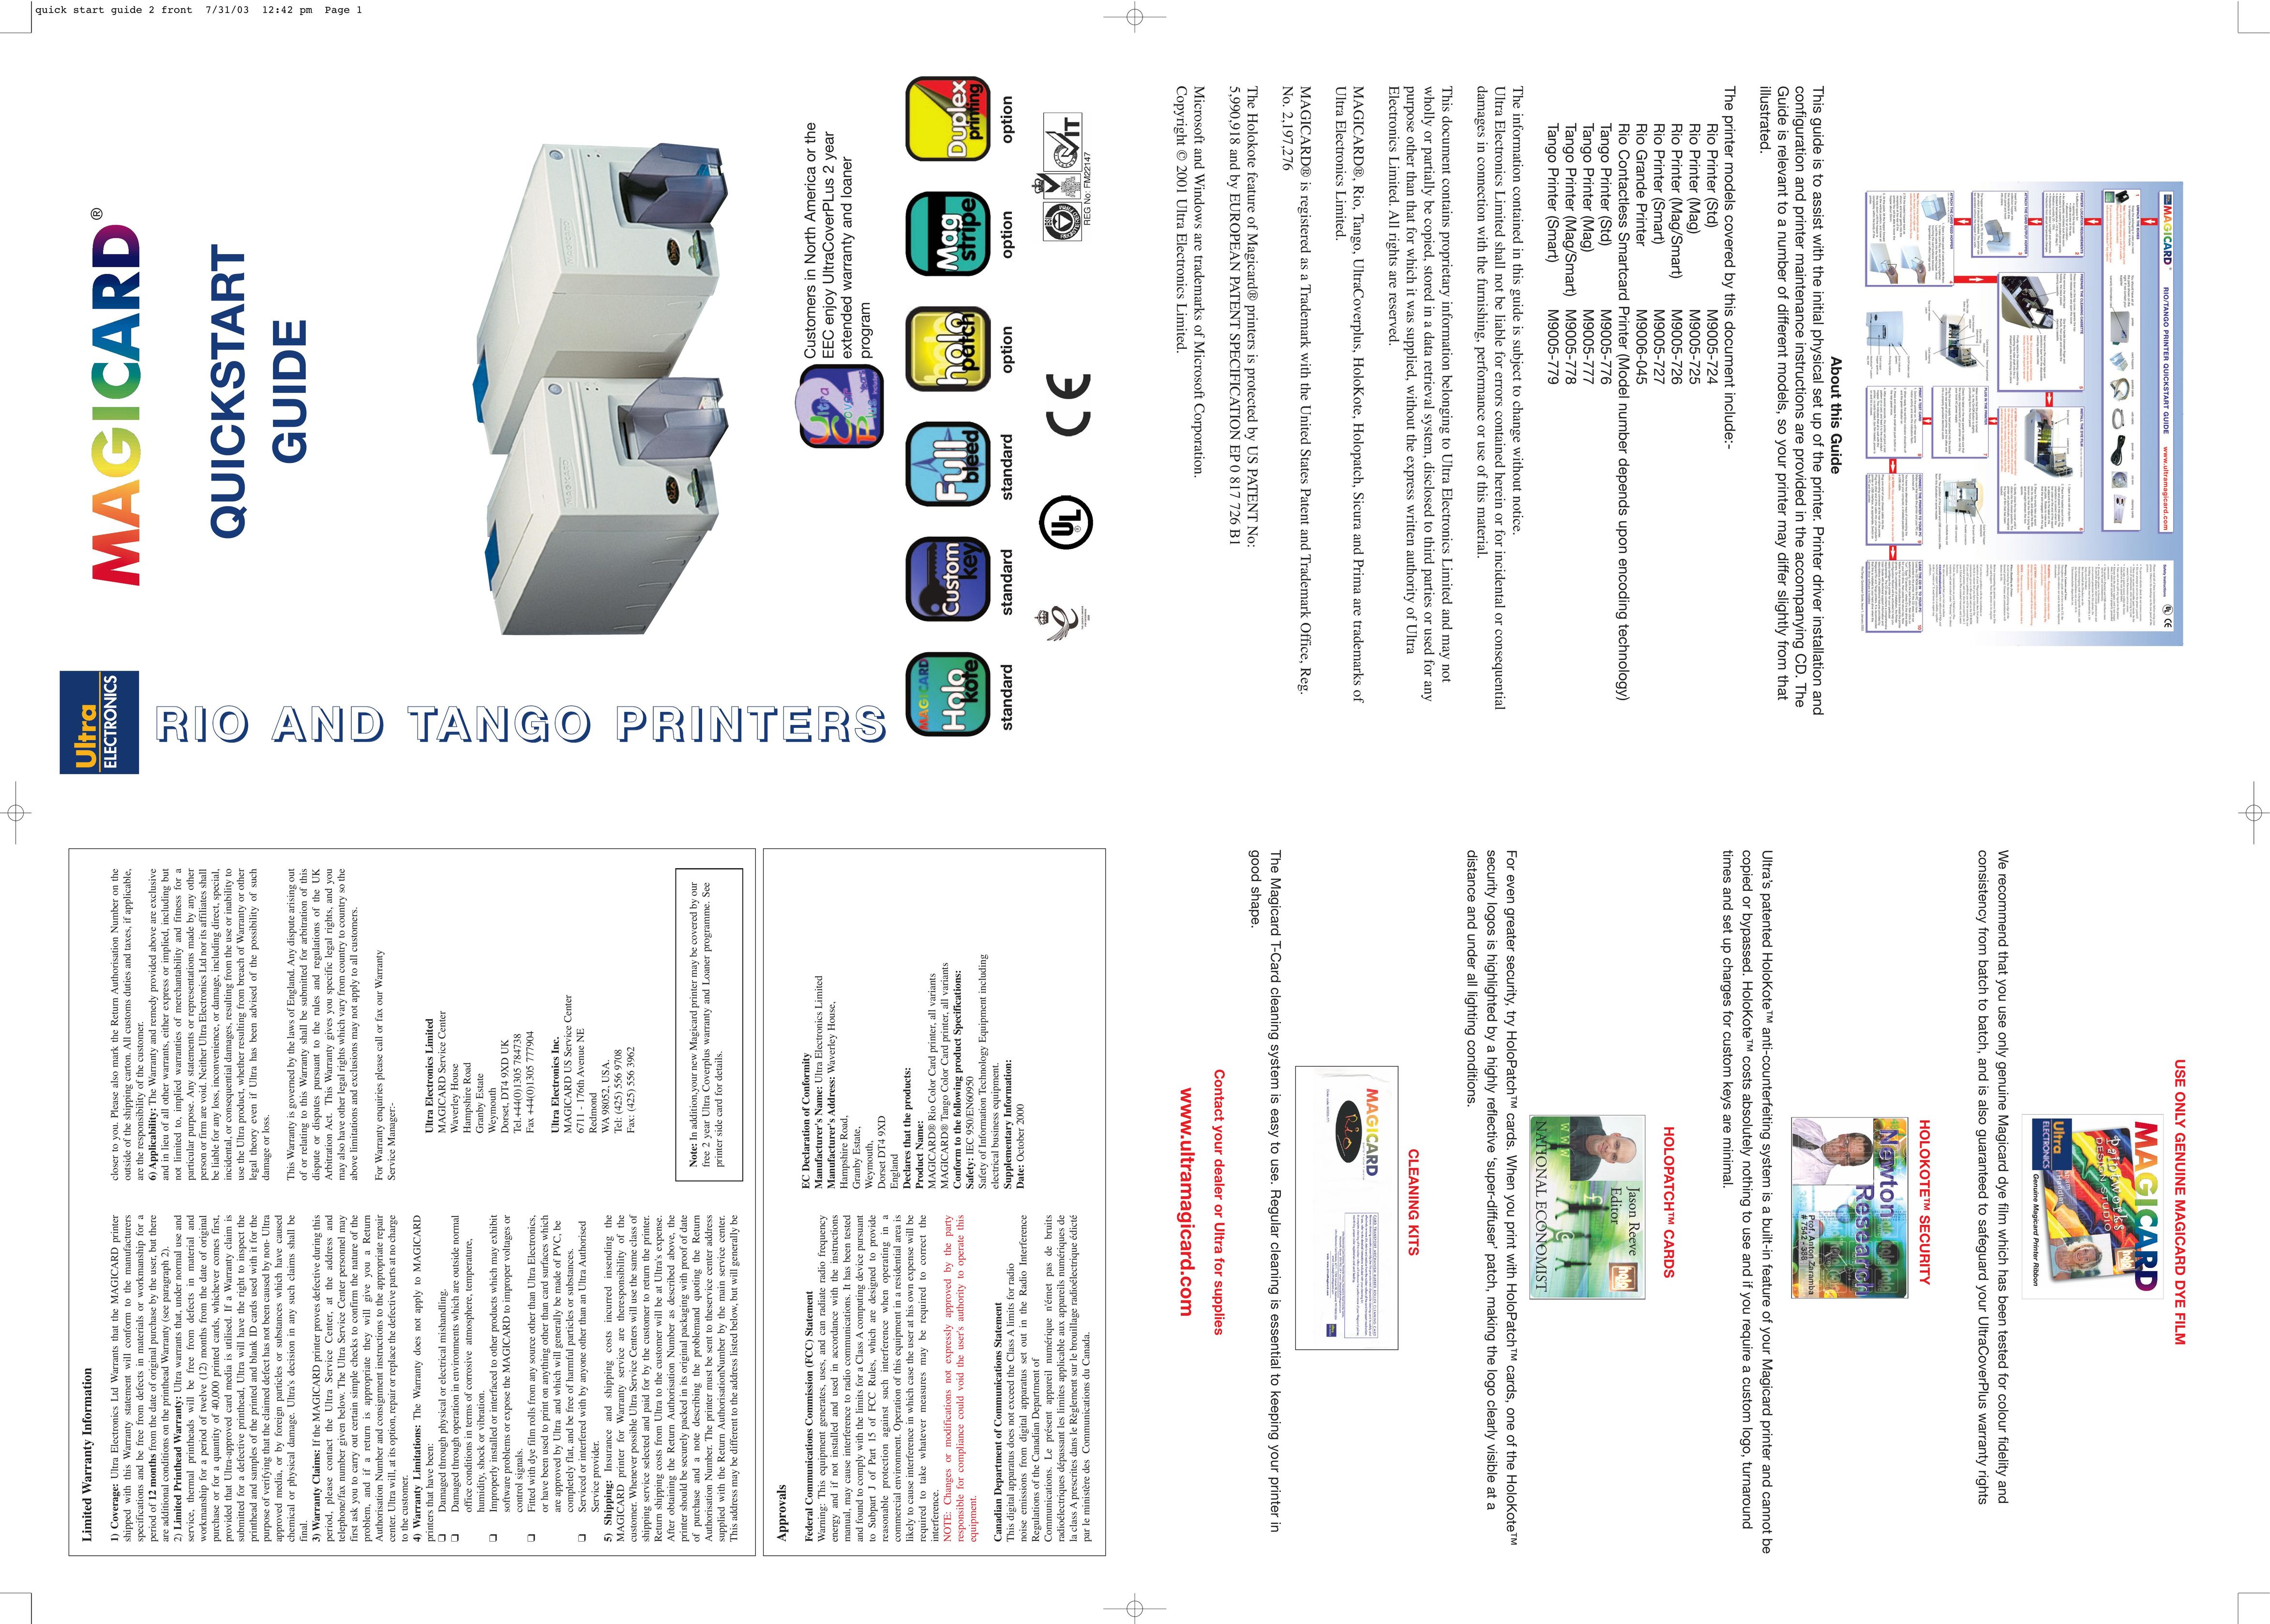 Ultra electronic M9005-778 Printer User Manual